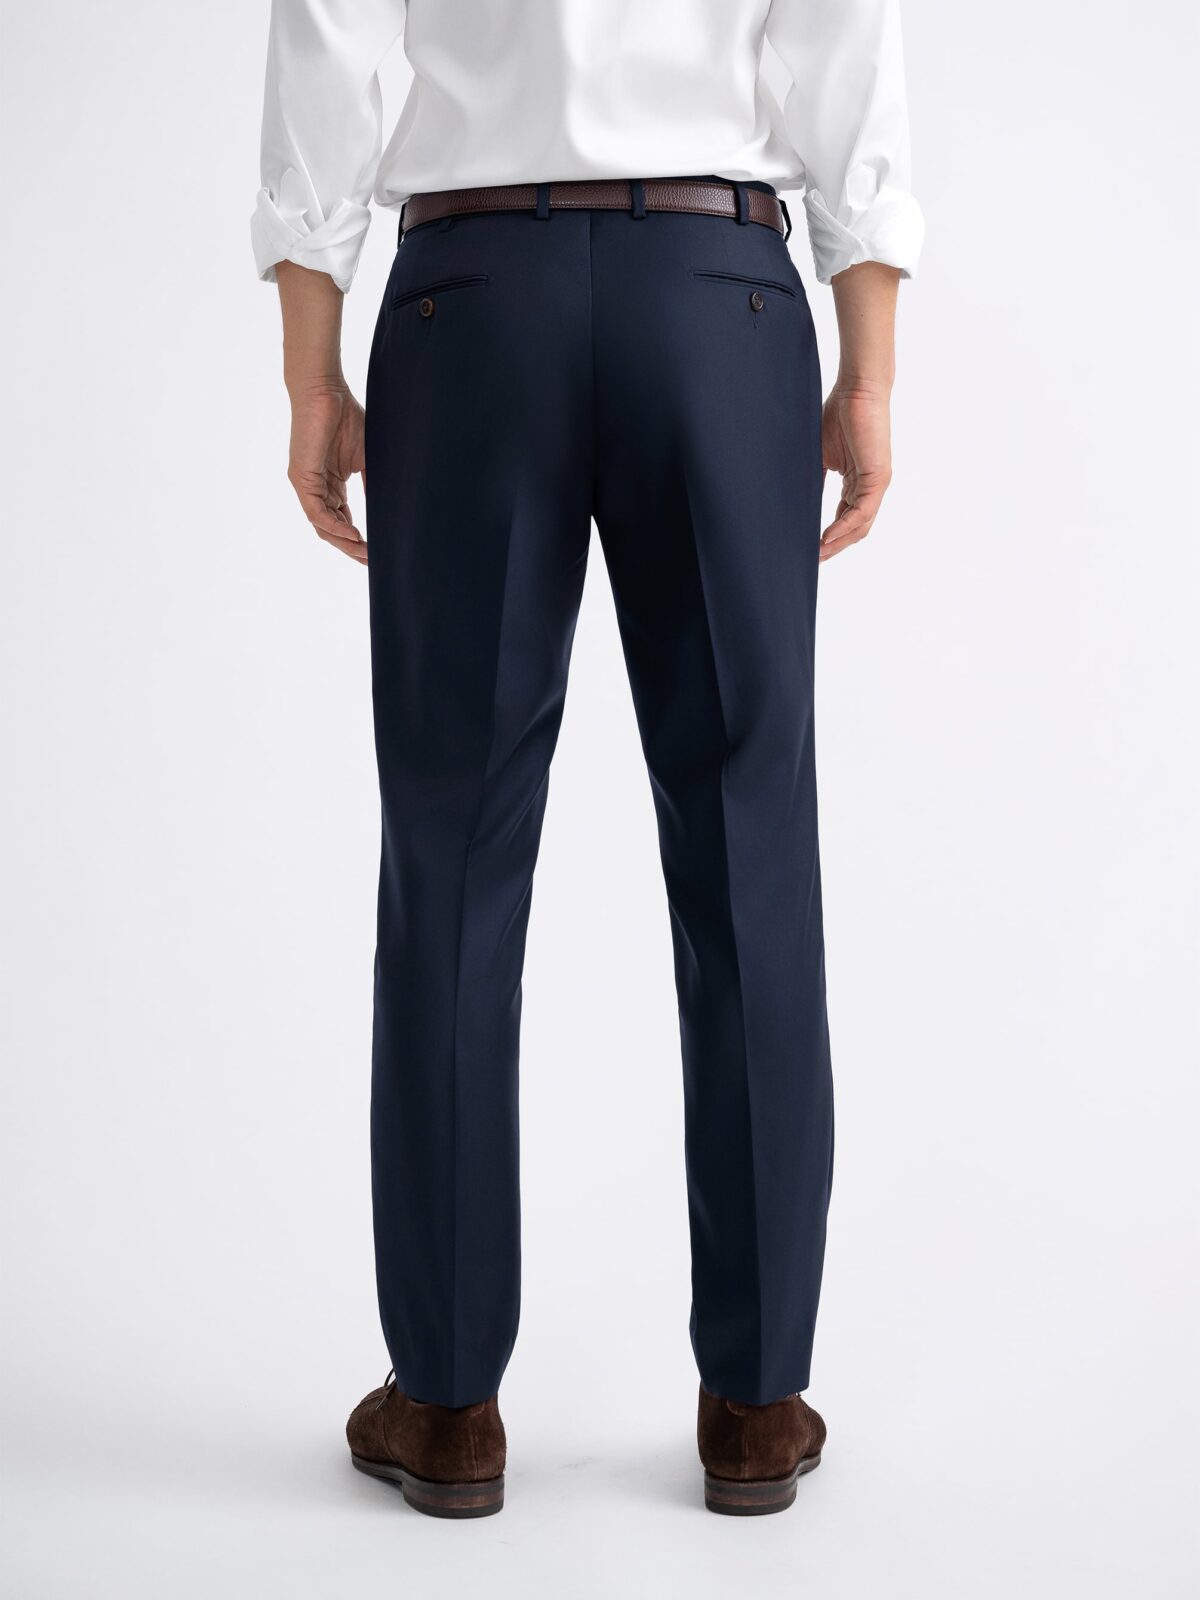 Khaki Woven Double Belt Loop Suit Pants